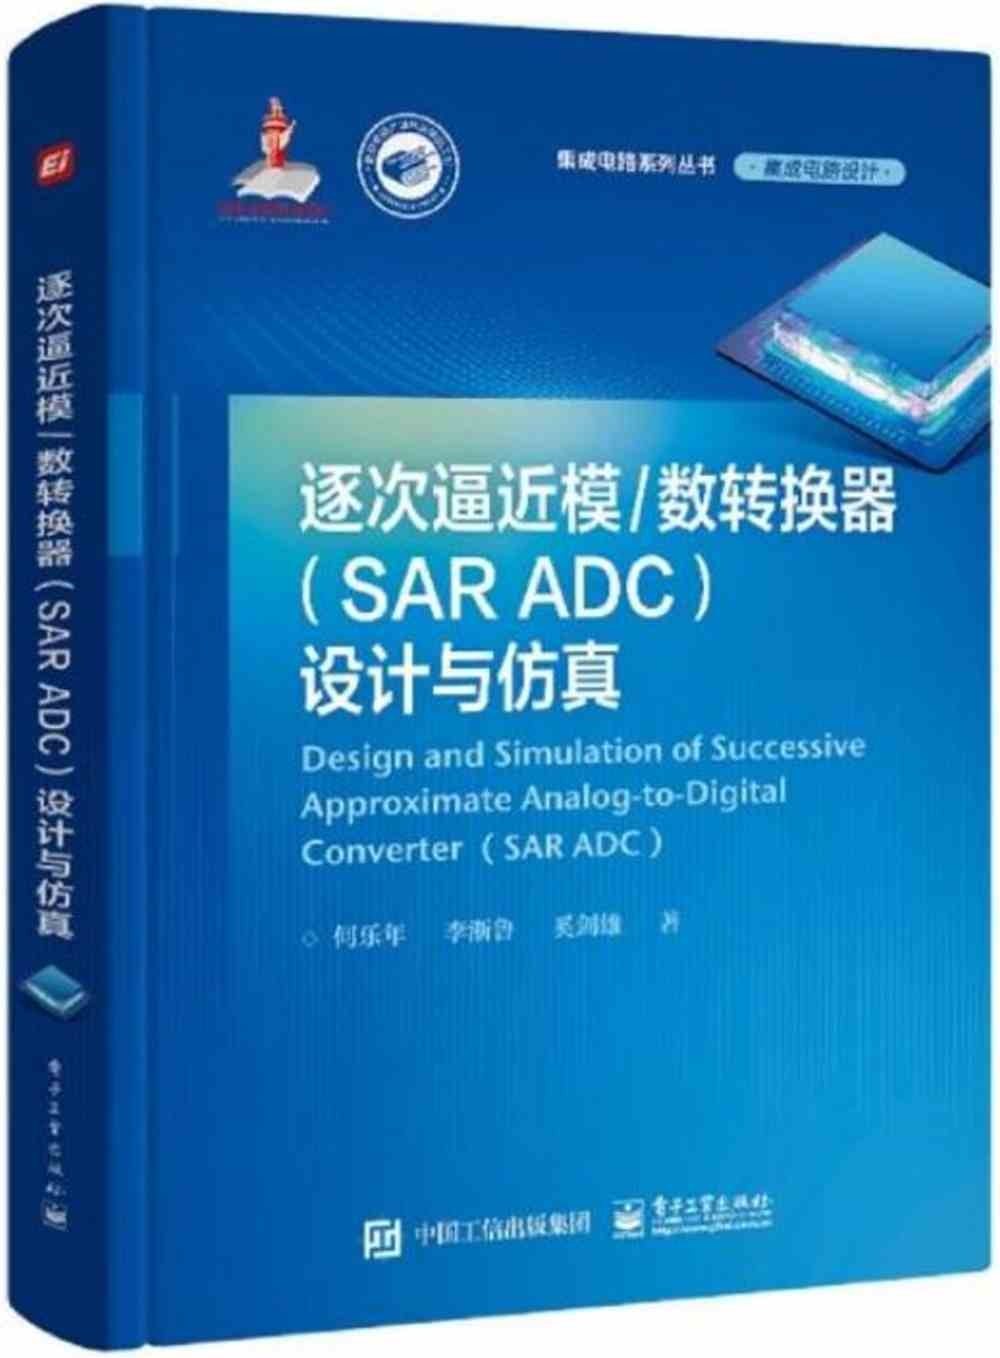 逐次逼近模/數轉換器(SAR ADC)設計與仿真